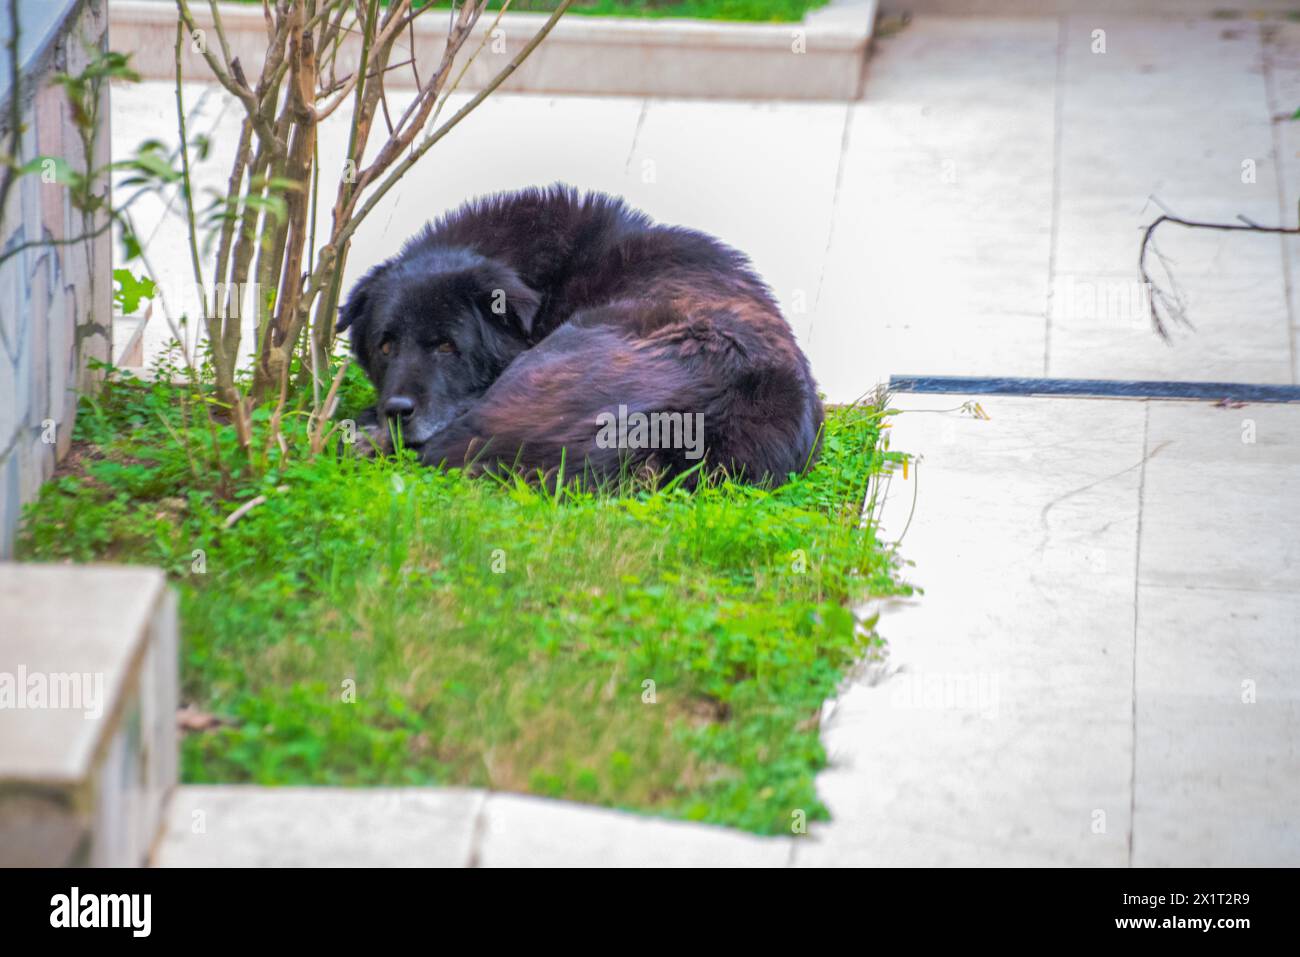 Finden Sie Ruhe in einem ruhigen Schlaf, während der verschlafene schwarze Hund im Garten liegt, eingebettet in das üppige grüne Gras. Stockfoto